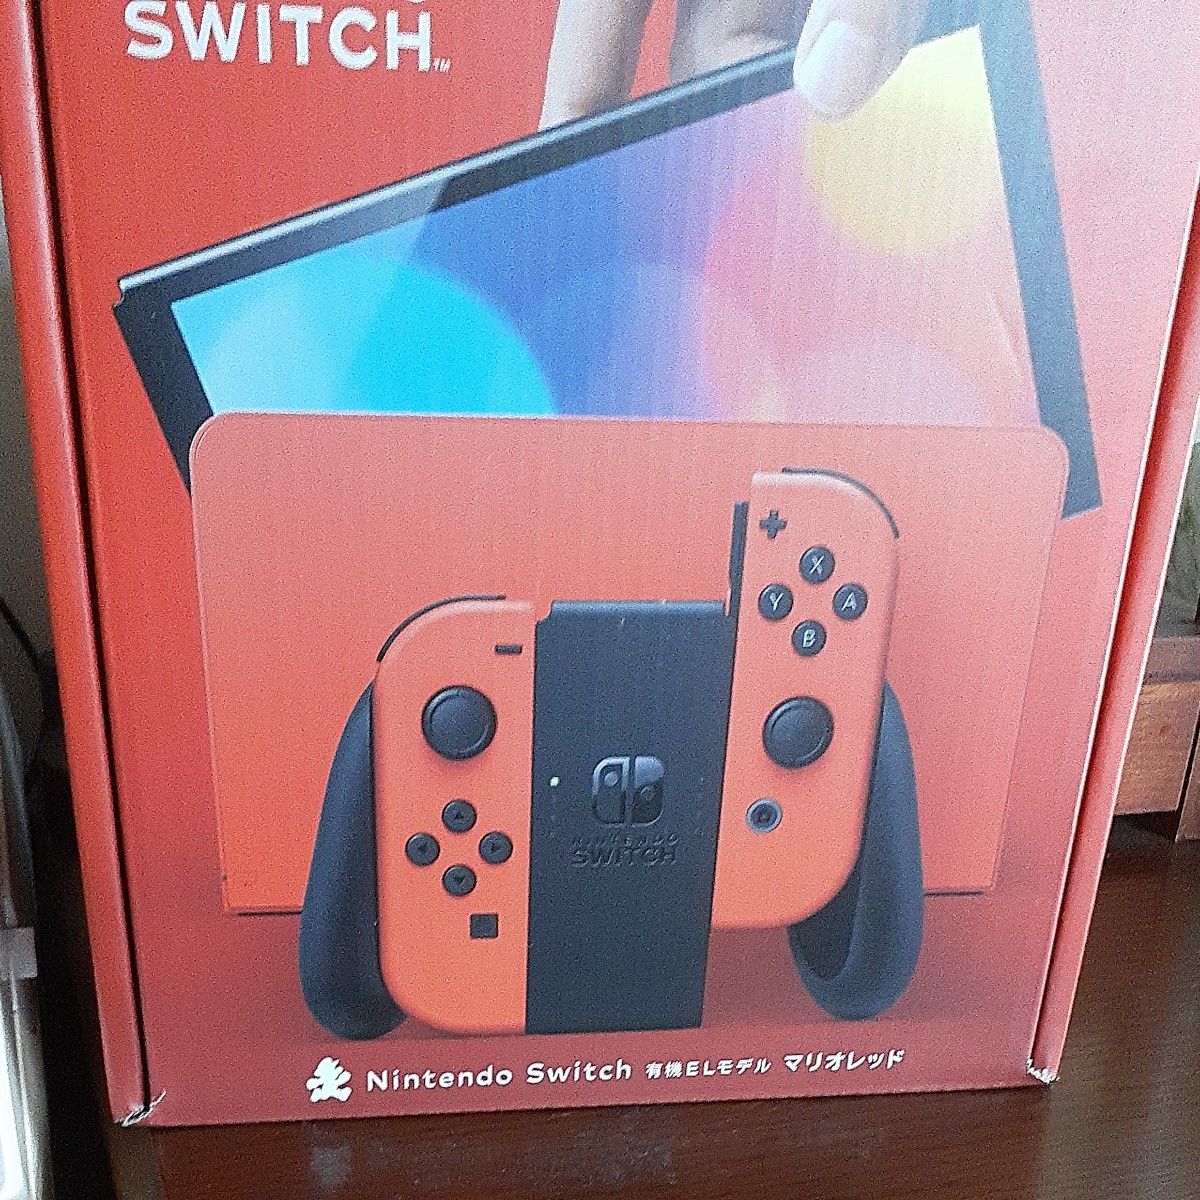 Nintendo Switch 有機ELモデル マリオレッド